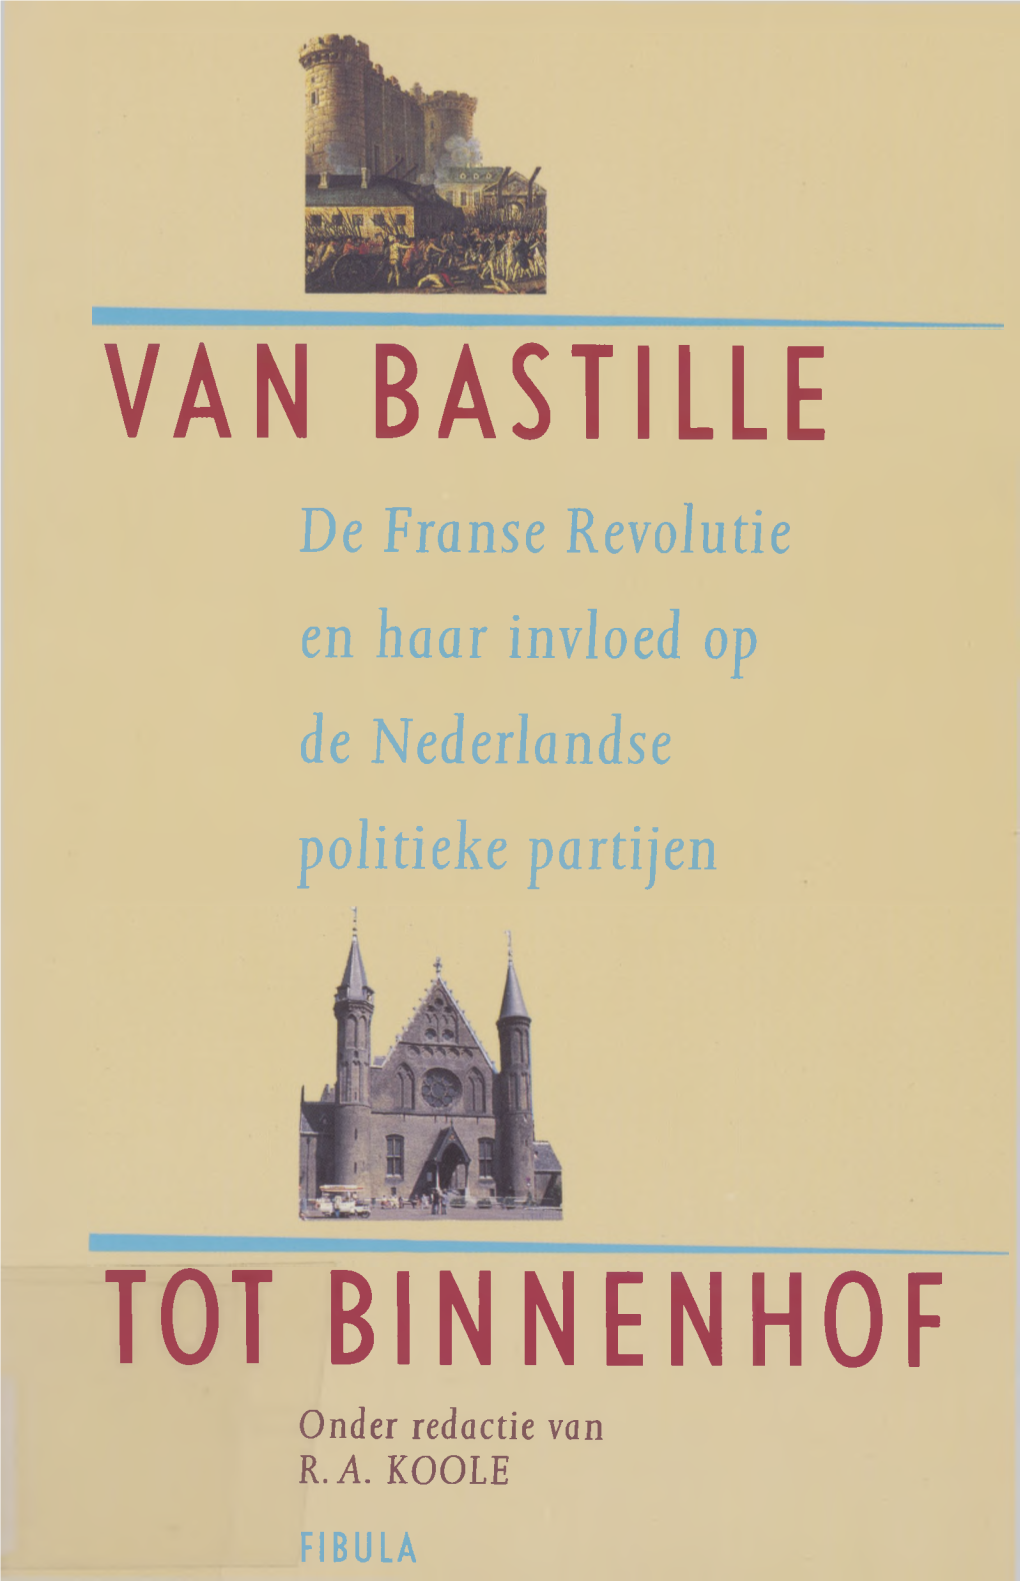 RUG/DNPP/Repository Boeken/Van Bastille Tot Binnenhof